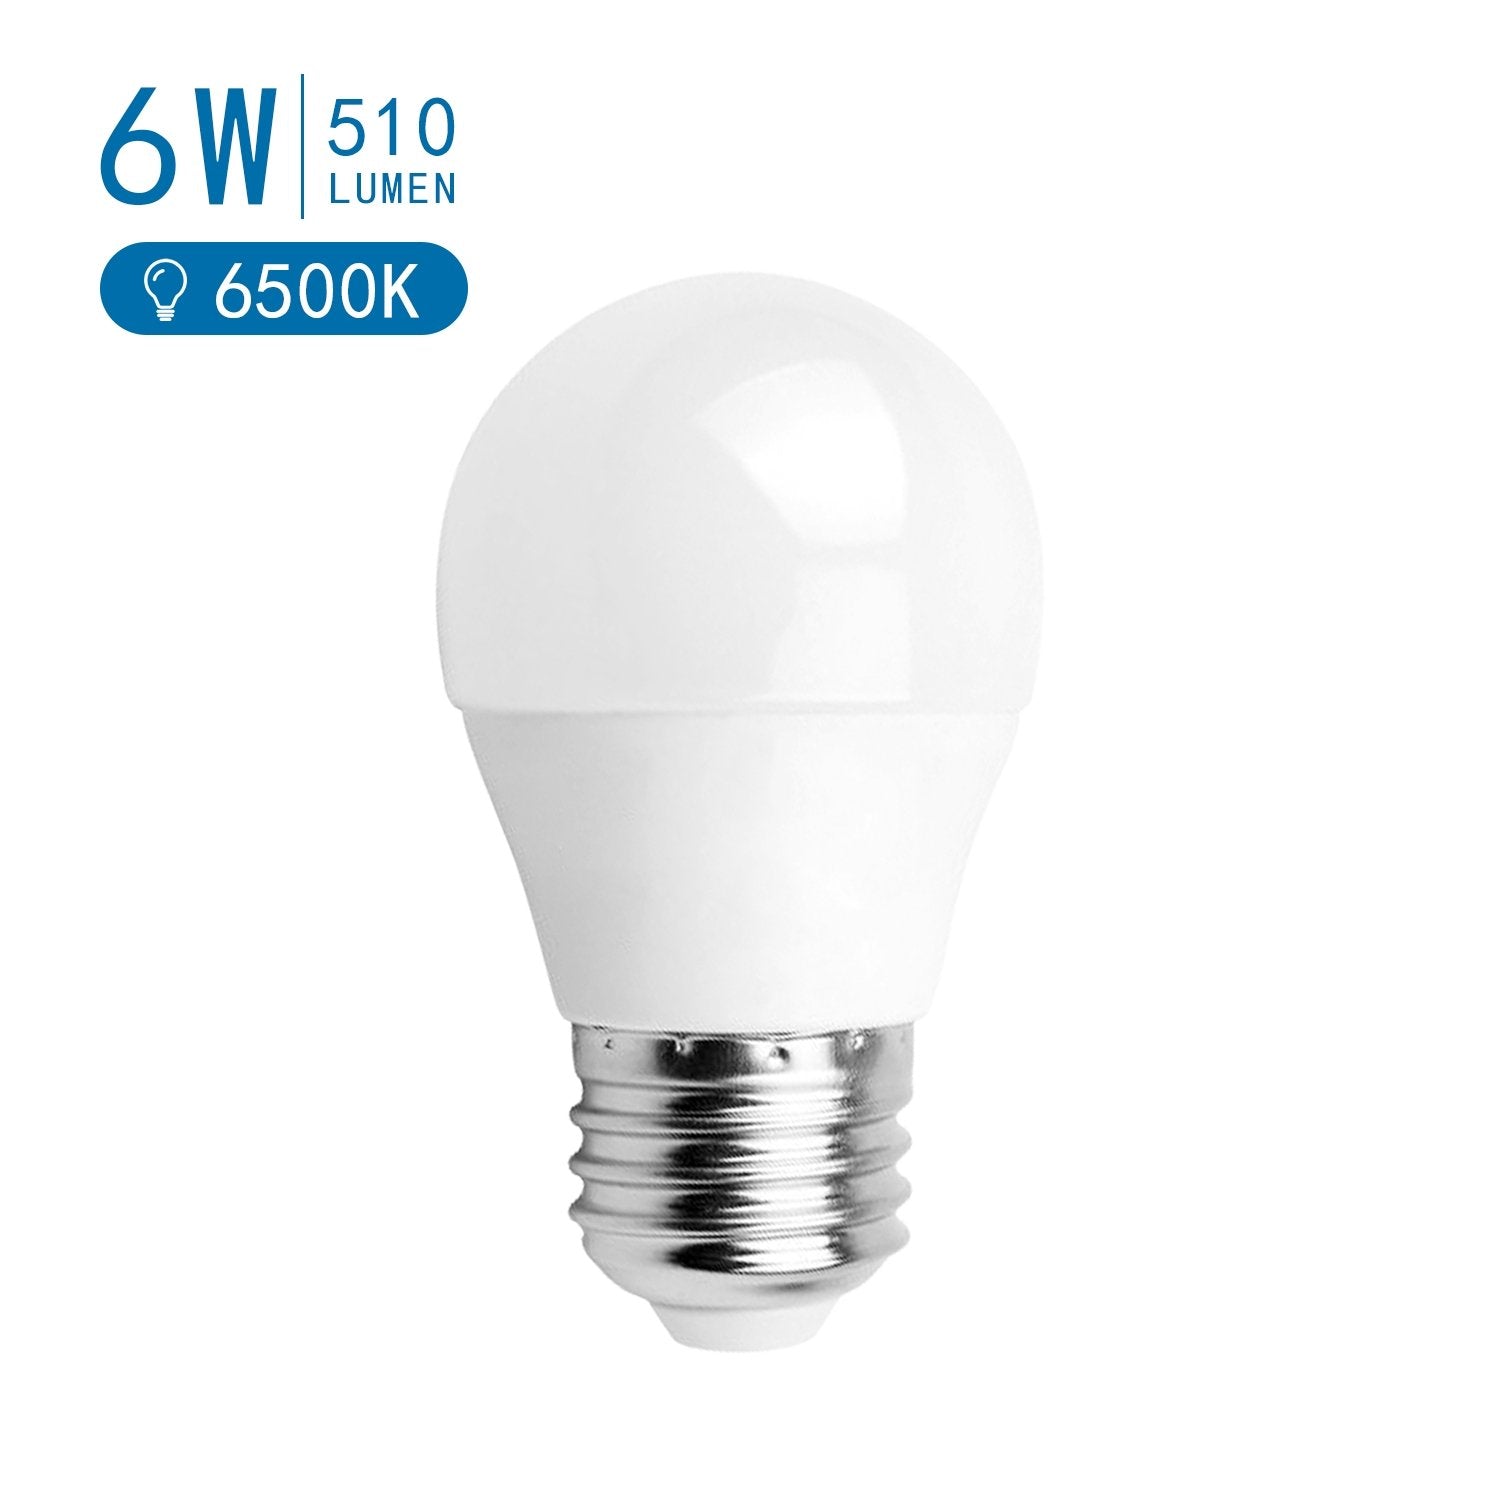 LED Leuchtmittel, E27, 6 W, 510 lm, 6500 K (kaltweiß) von AIGOSTAR